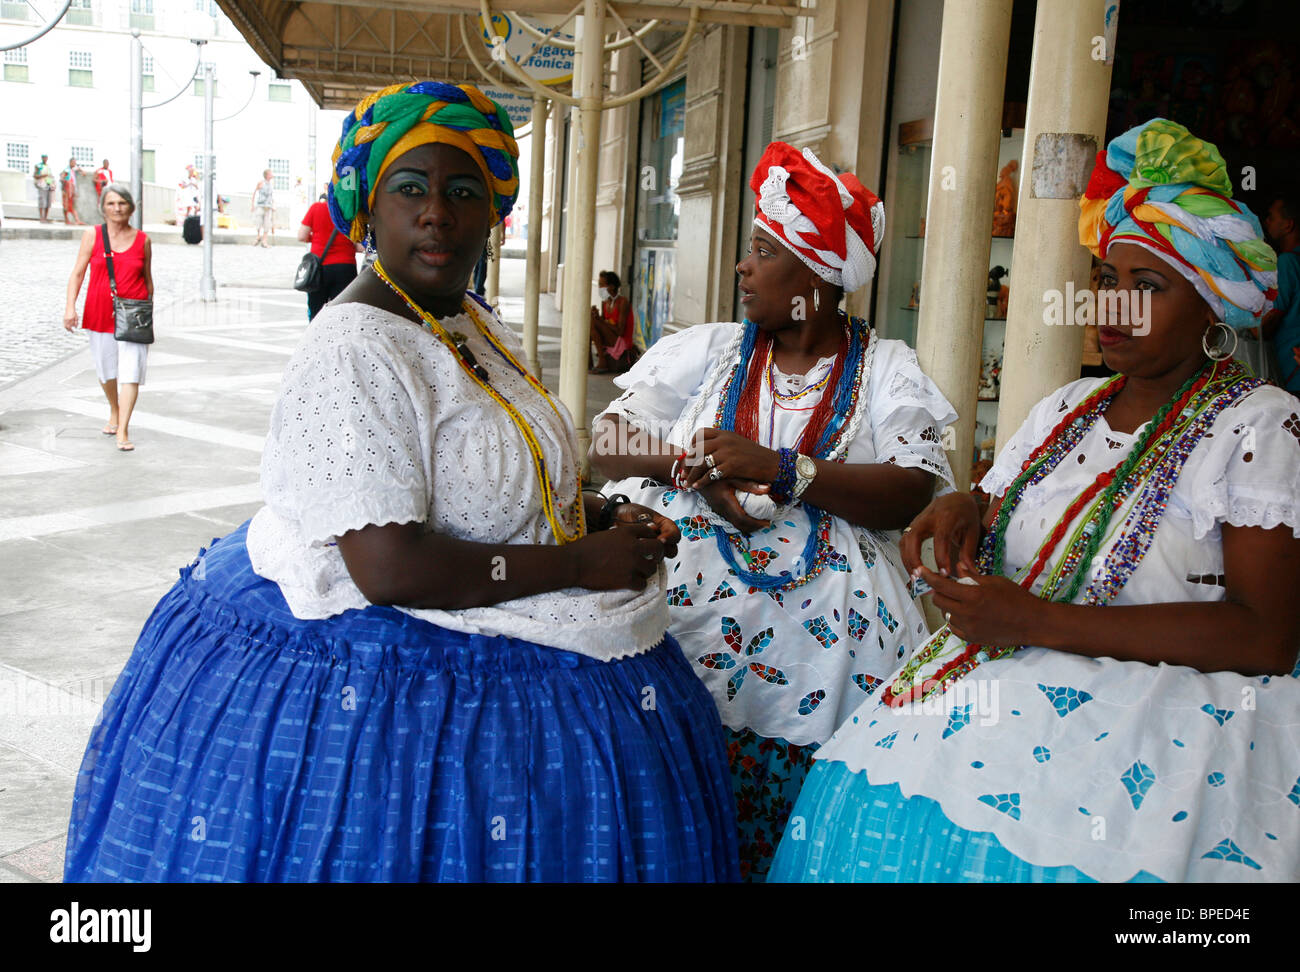 Bahianischen Frauen in traditioneller Kleidung, Salvador, Bahia, Brasilien  Stockfotografie - Alamy